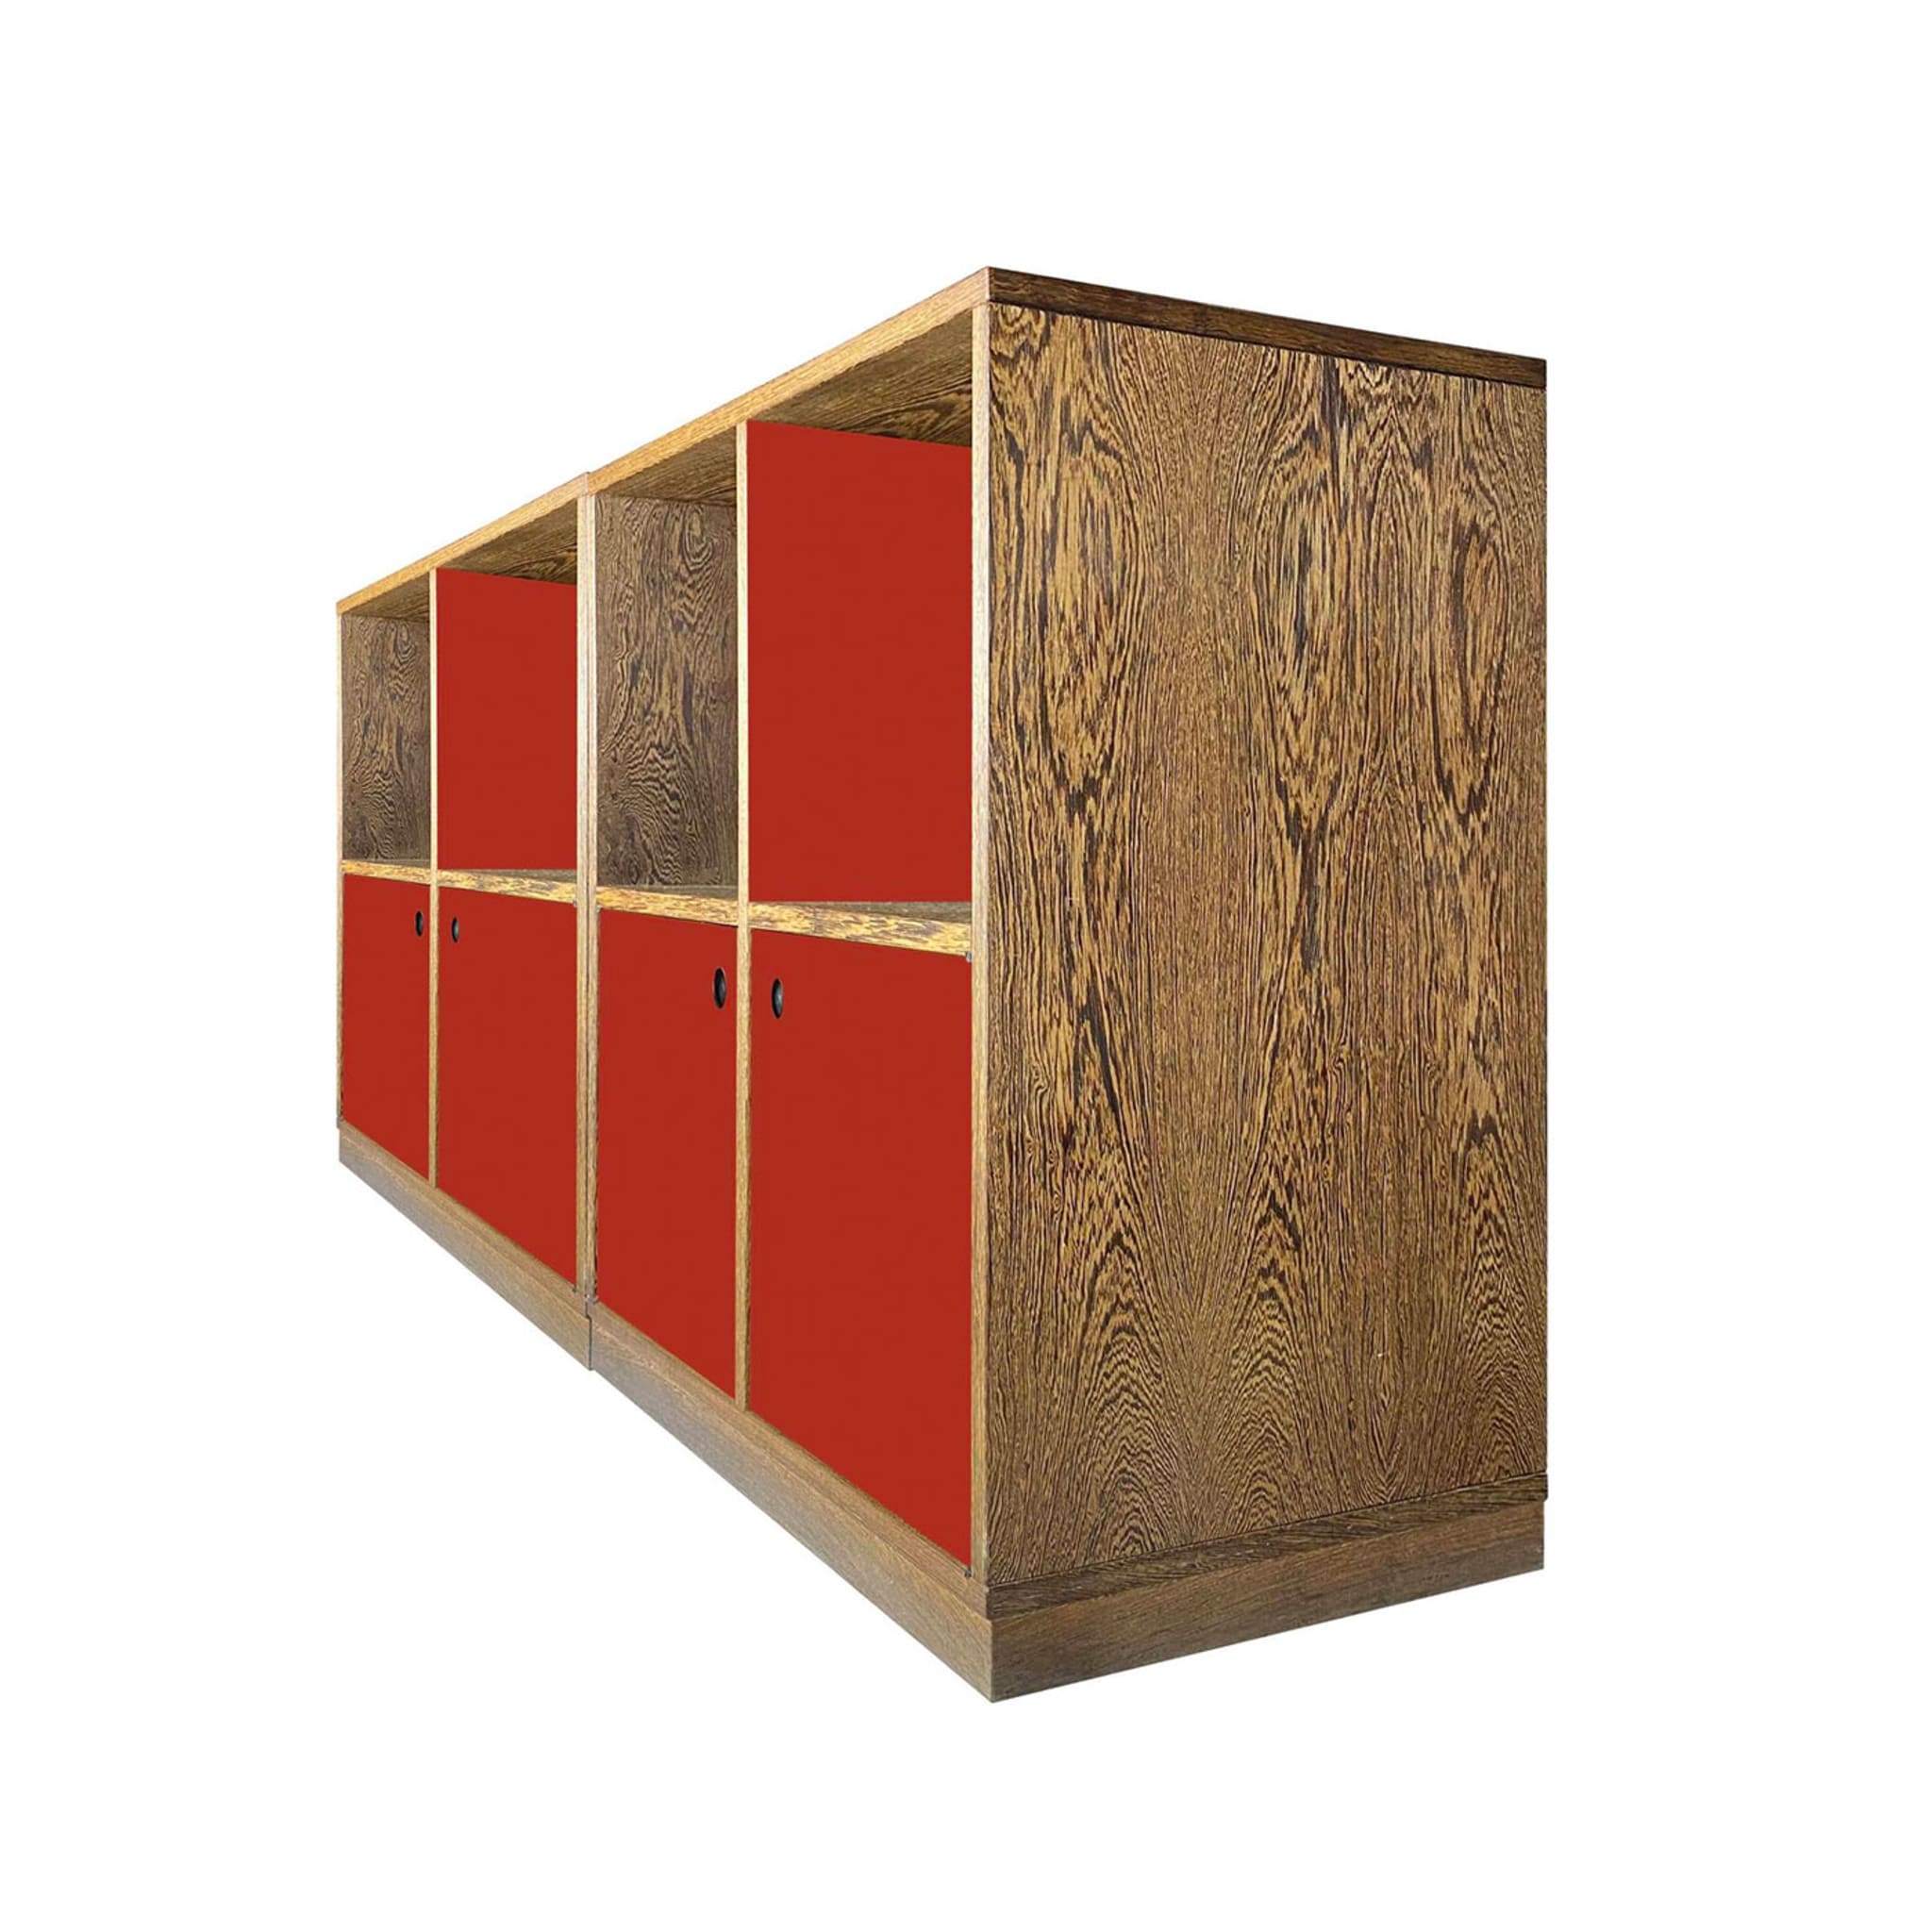 Esotica Red Sideboard by Ferdinando Meccani - Alternative view 4